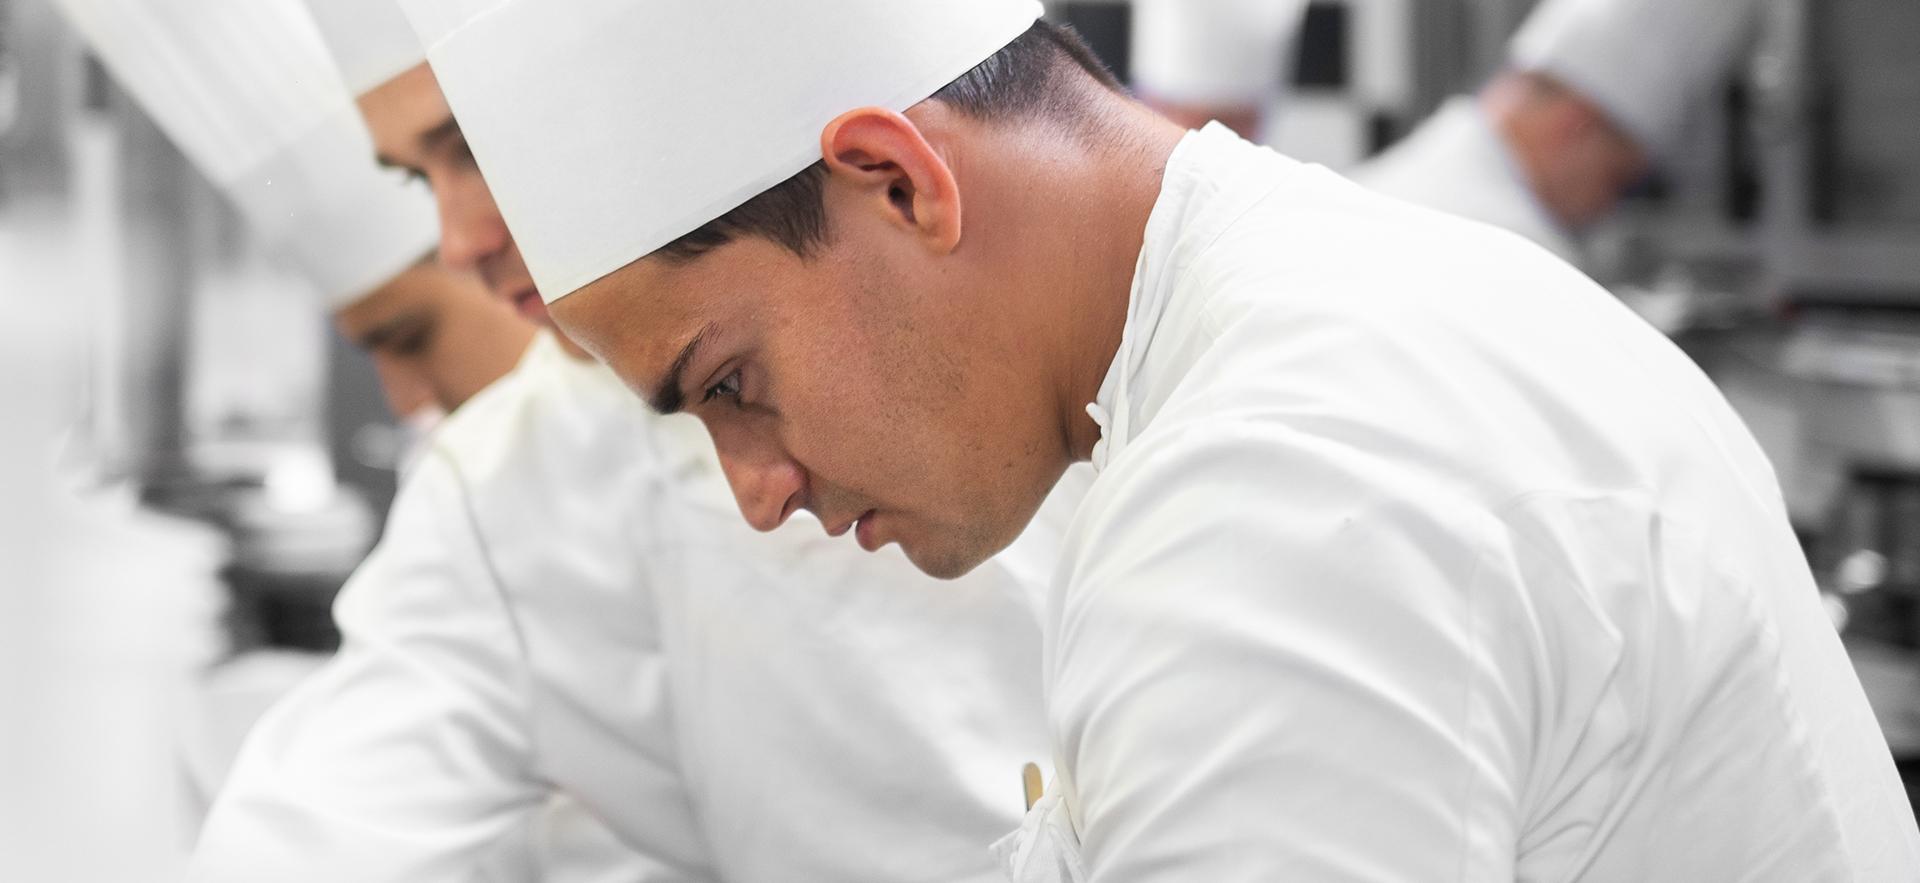 Josh Adamo graduate shown in chef uniform in kitchen